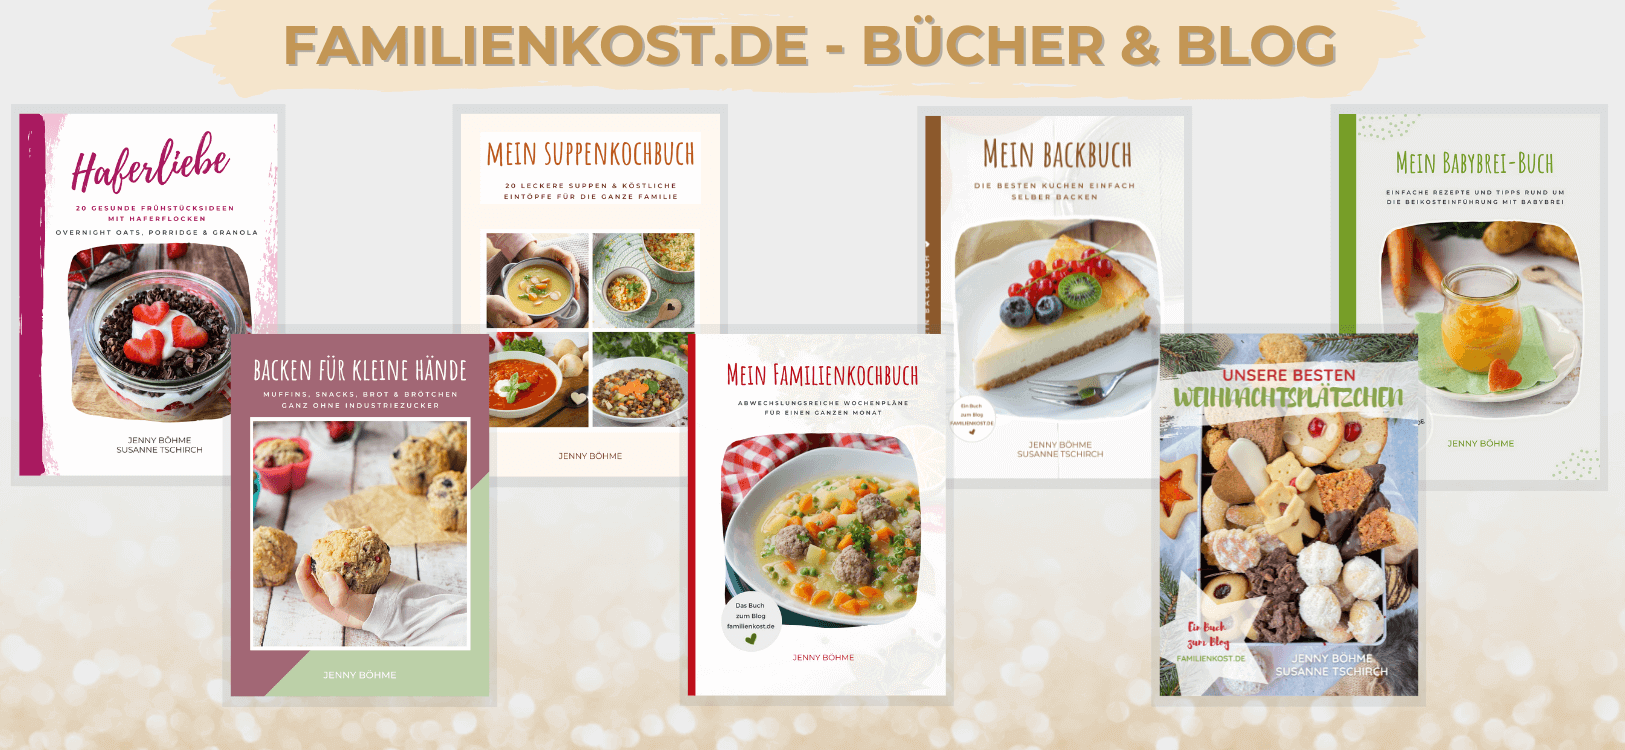 Jenny Böhme Kochbücher